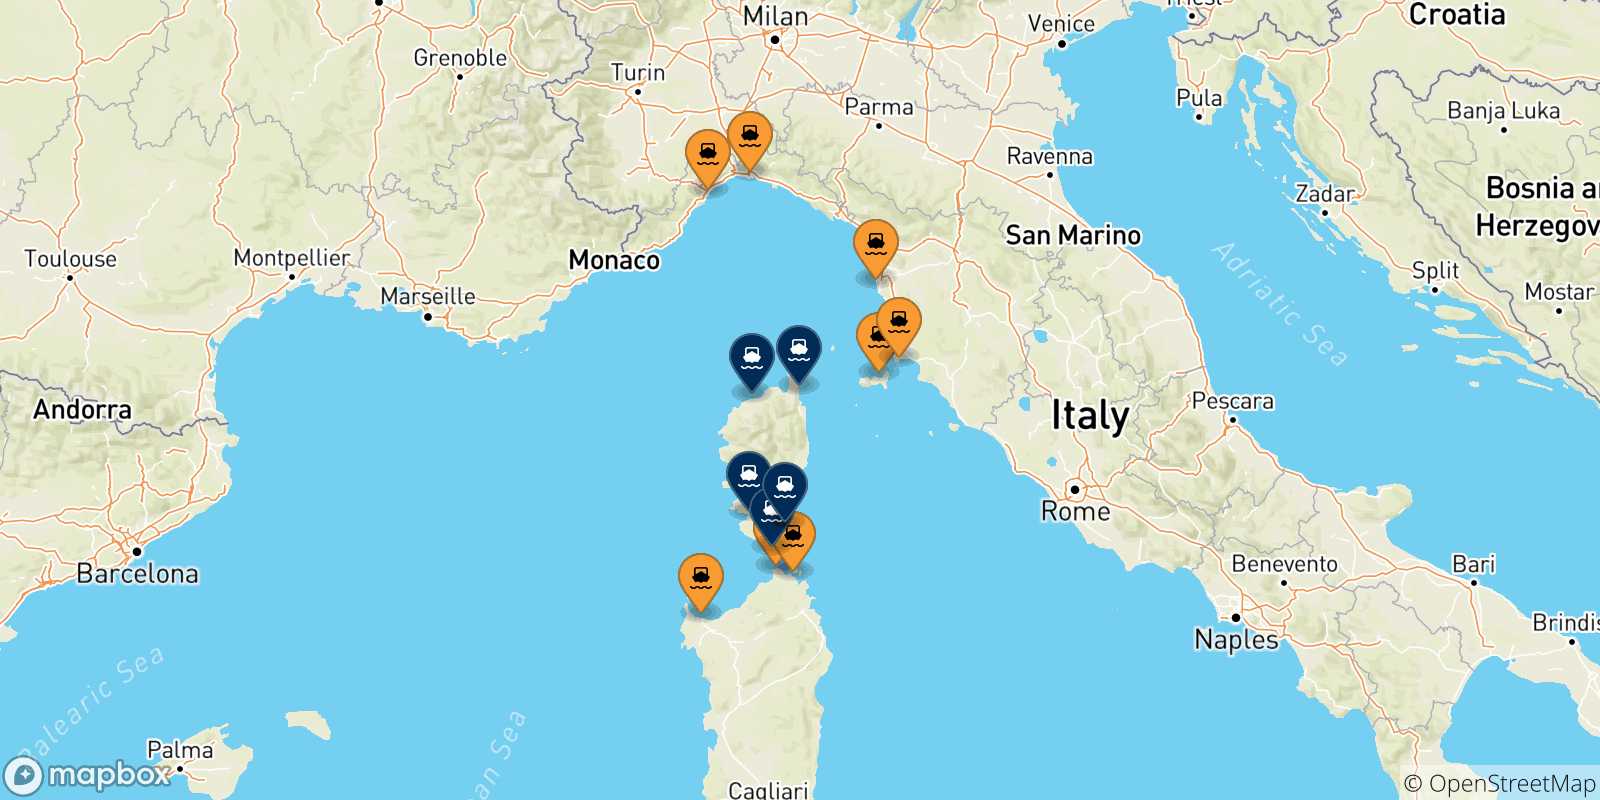 Mappa delle possibili rotte tra l'Italia e la Corsica